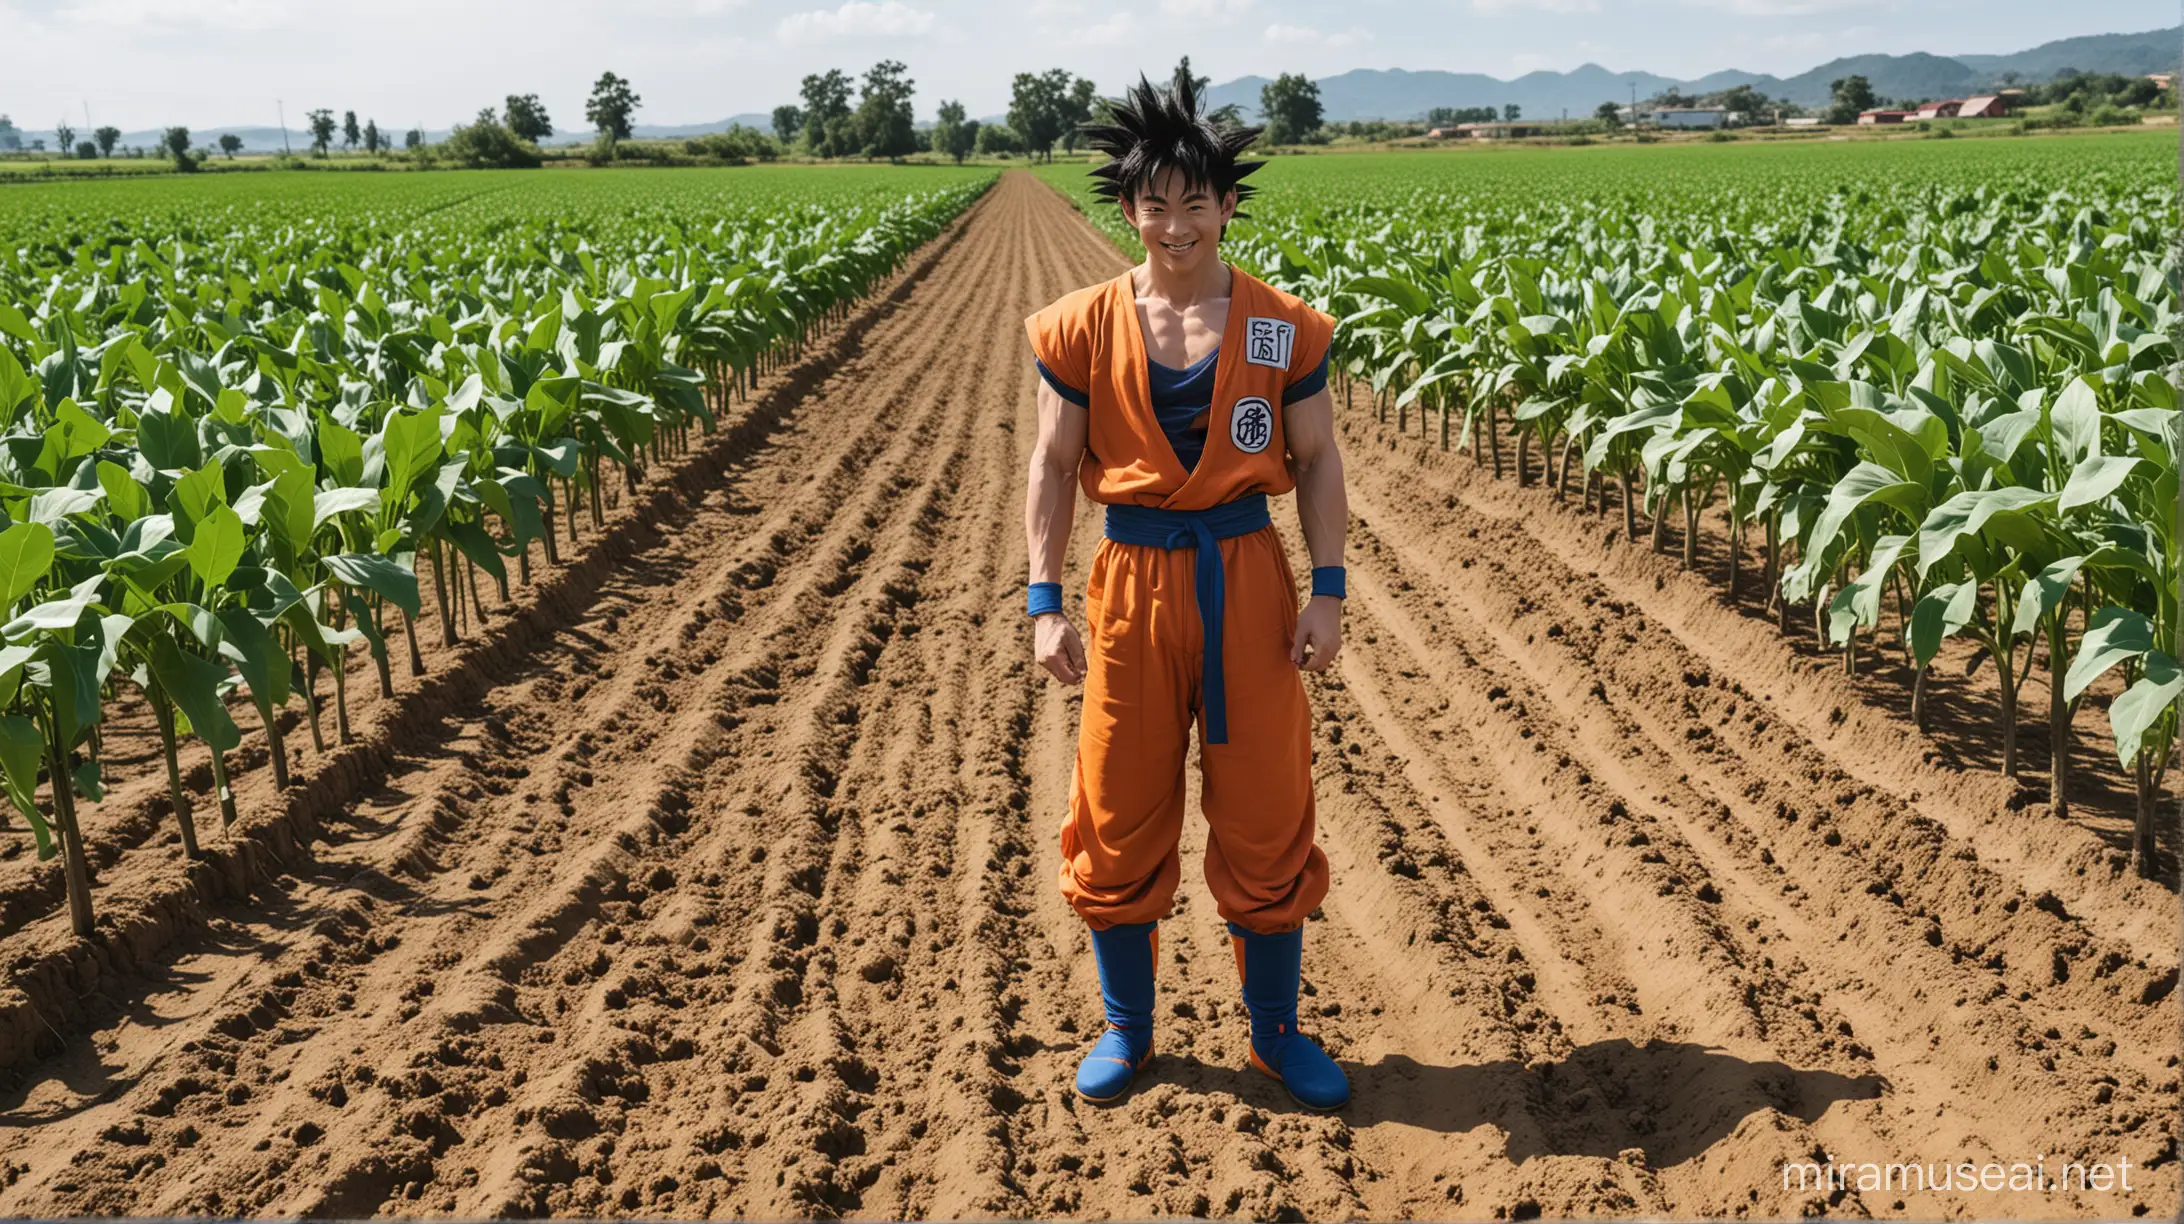 Goku Cultivating Joy on the Farm